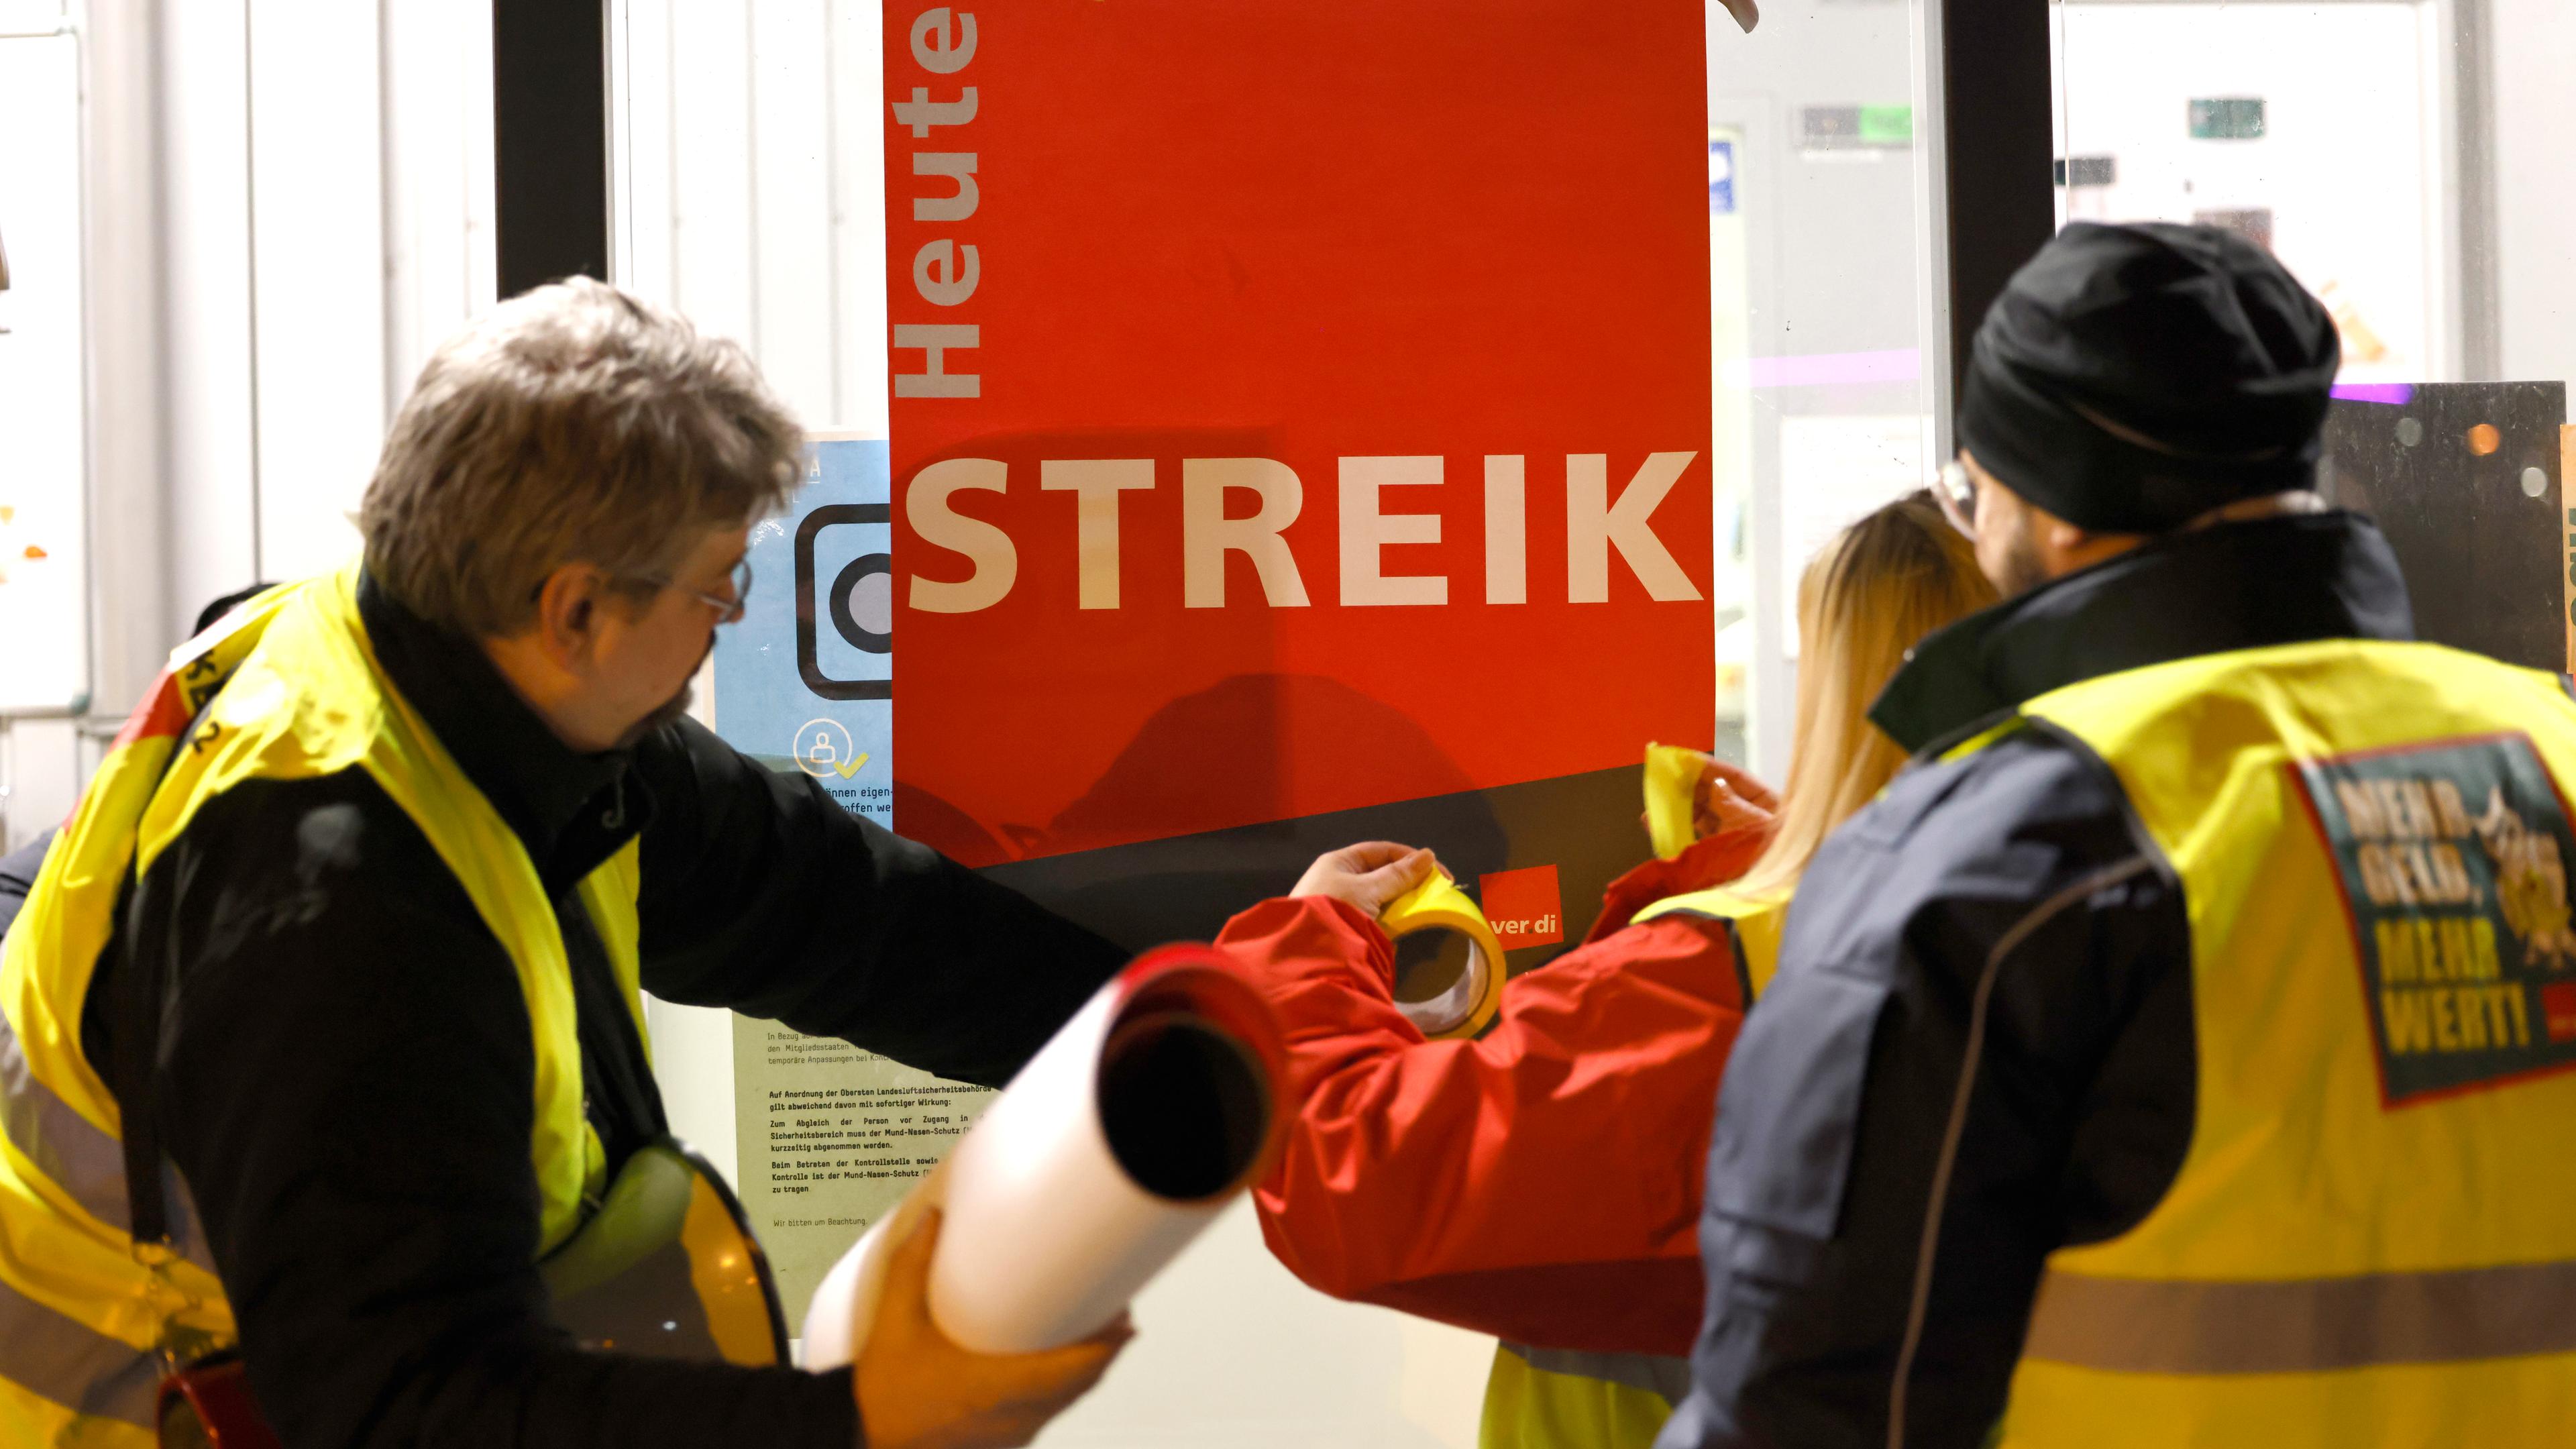 Streikende kleben ein Plakat mit der Aufschrift «Heute Streik» an eine Scheibe. Airport-Mitarbeiter der Luftsicherheit des Flughafens Köln Bonn streiken seit heute Abend für bessere Löhne